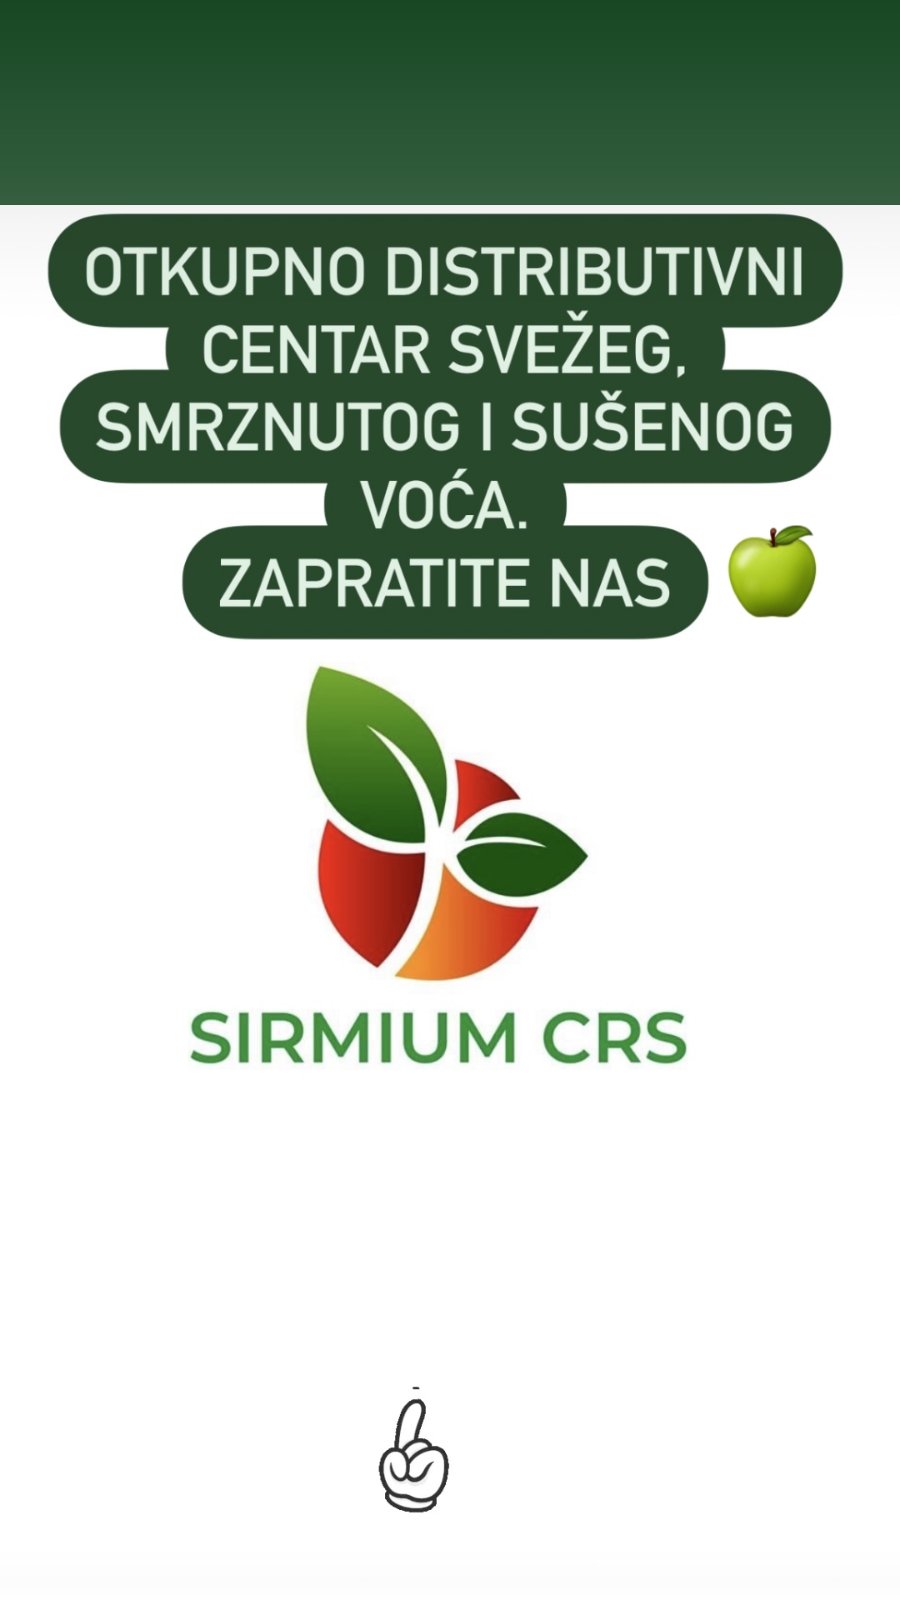 SirmiumCRS - Otkupno distributivni centar svežeg, smrznutog i sušenog voća